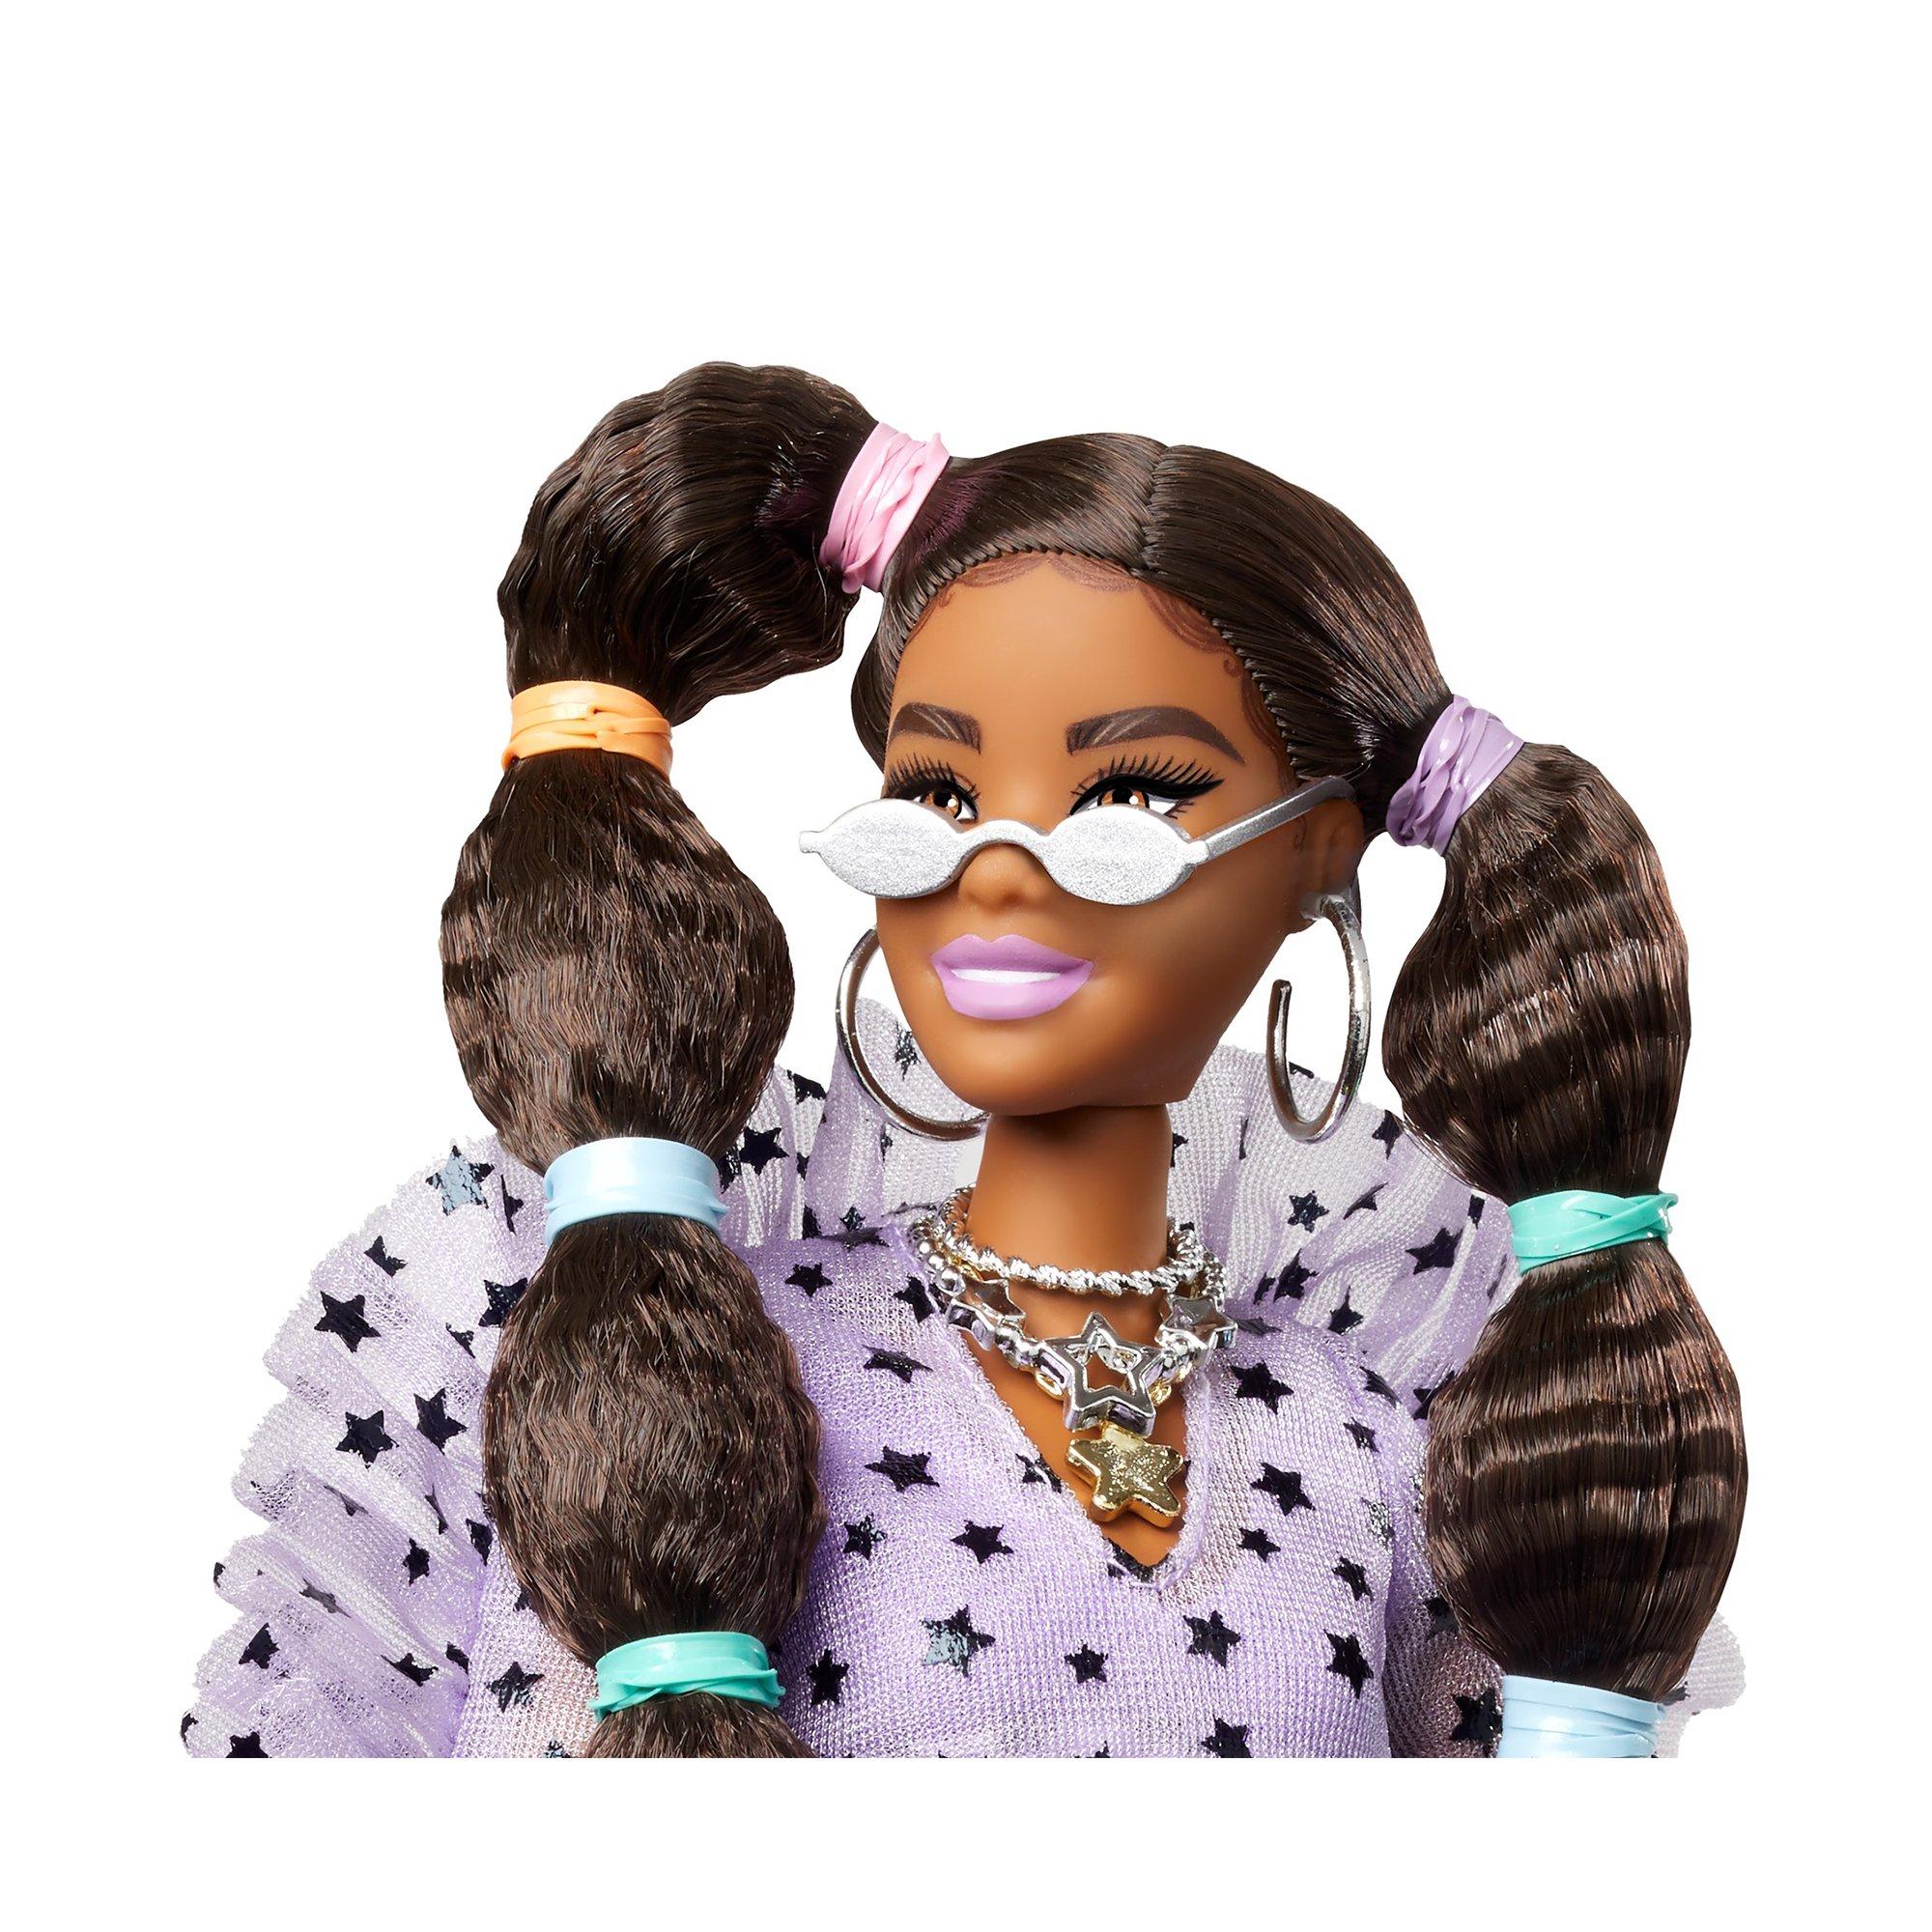 Barbie  Extra Puppe mit Zöpfen und Bobble Haargummies 